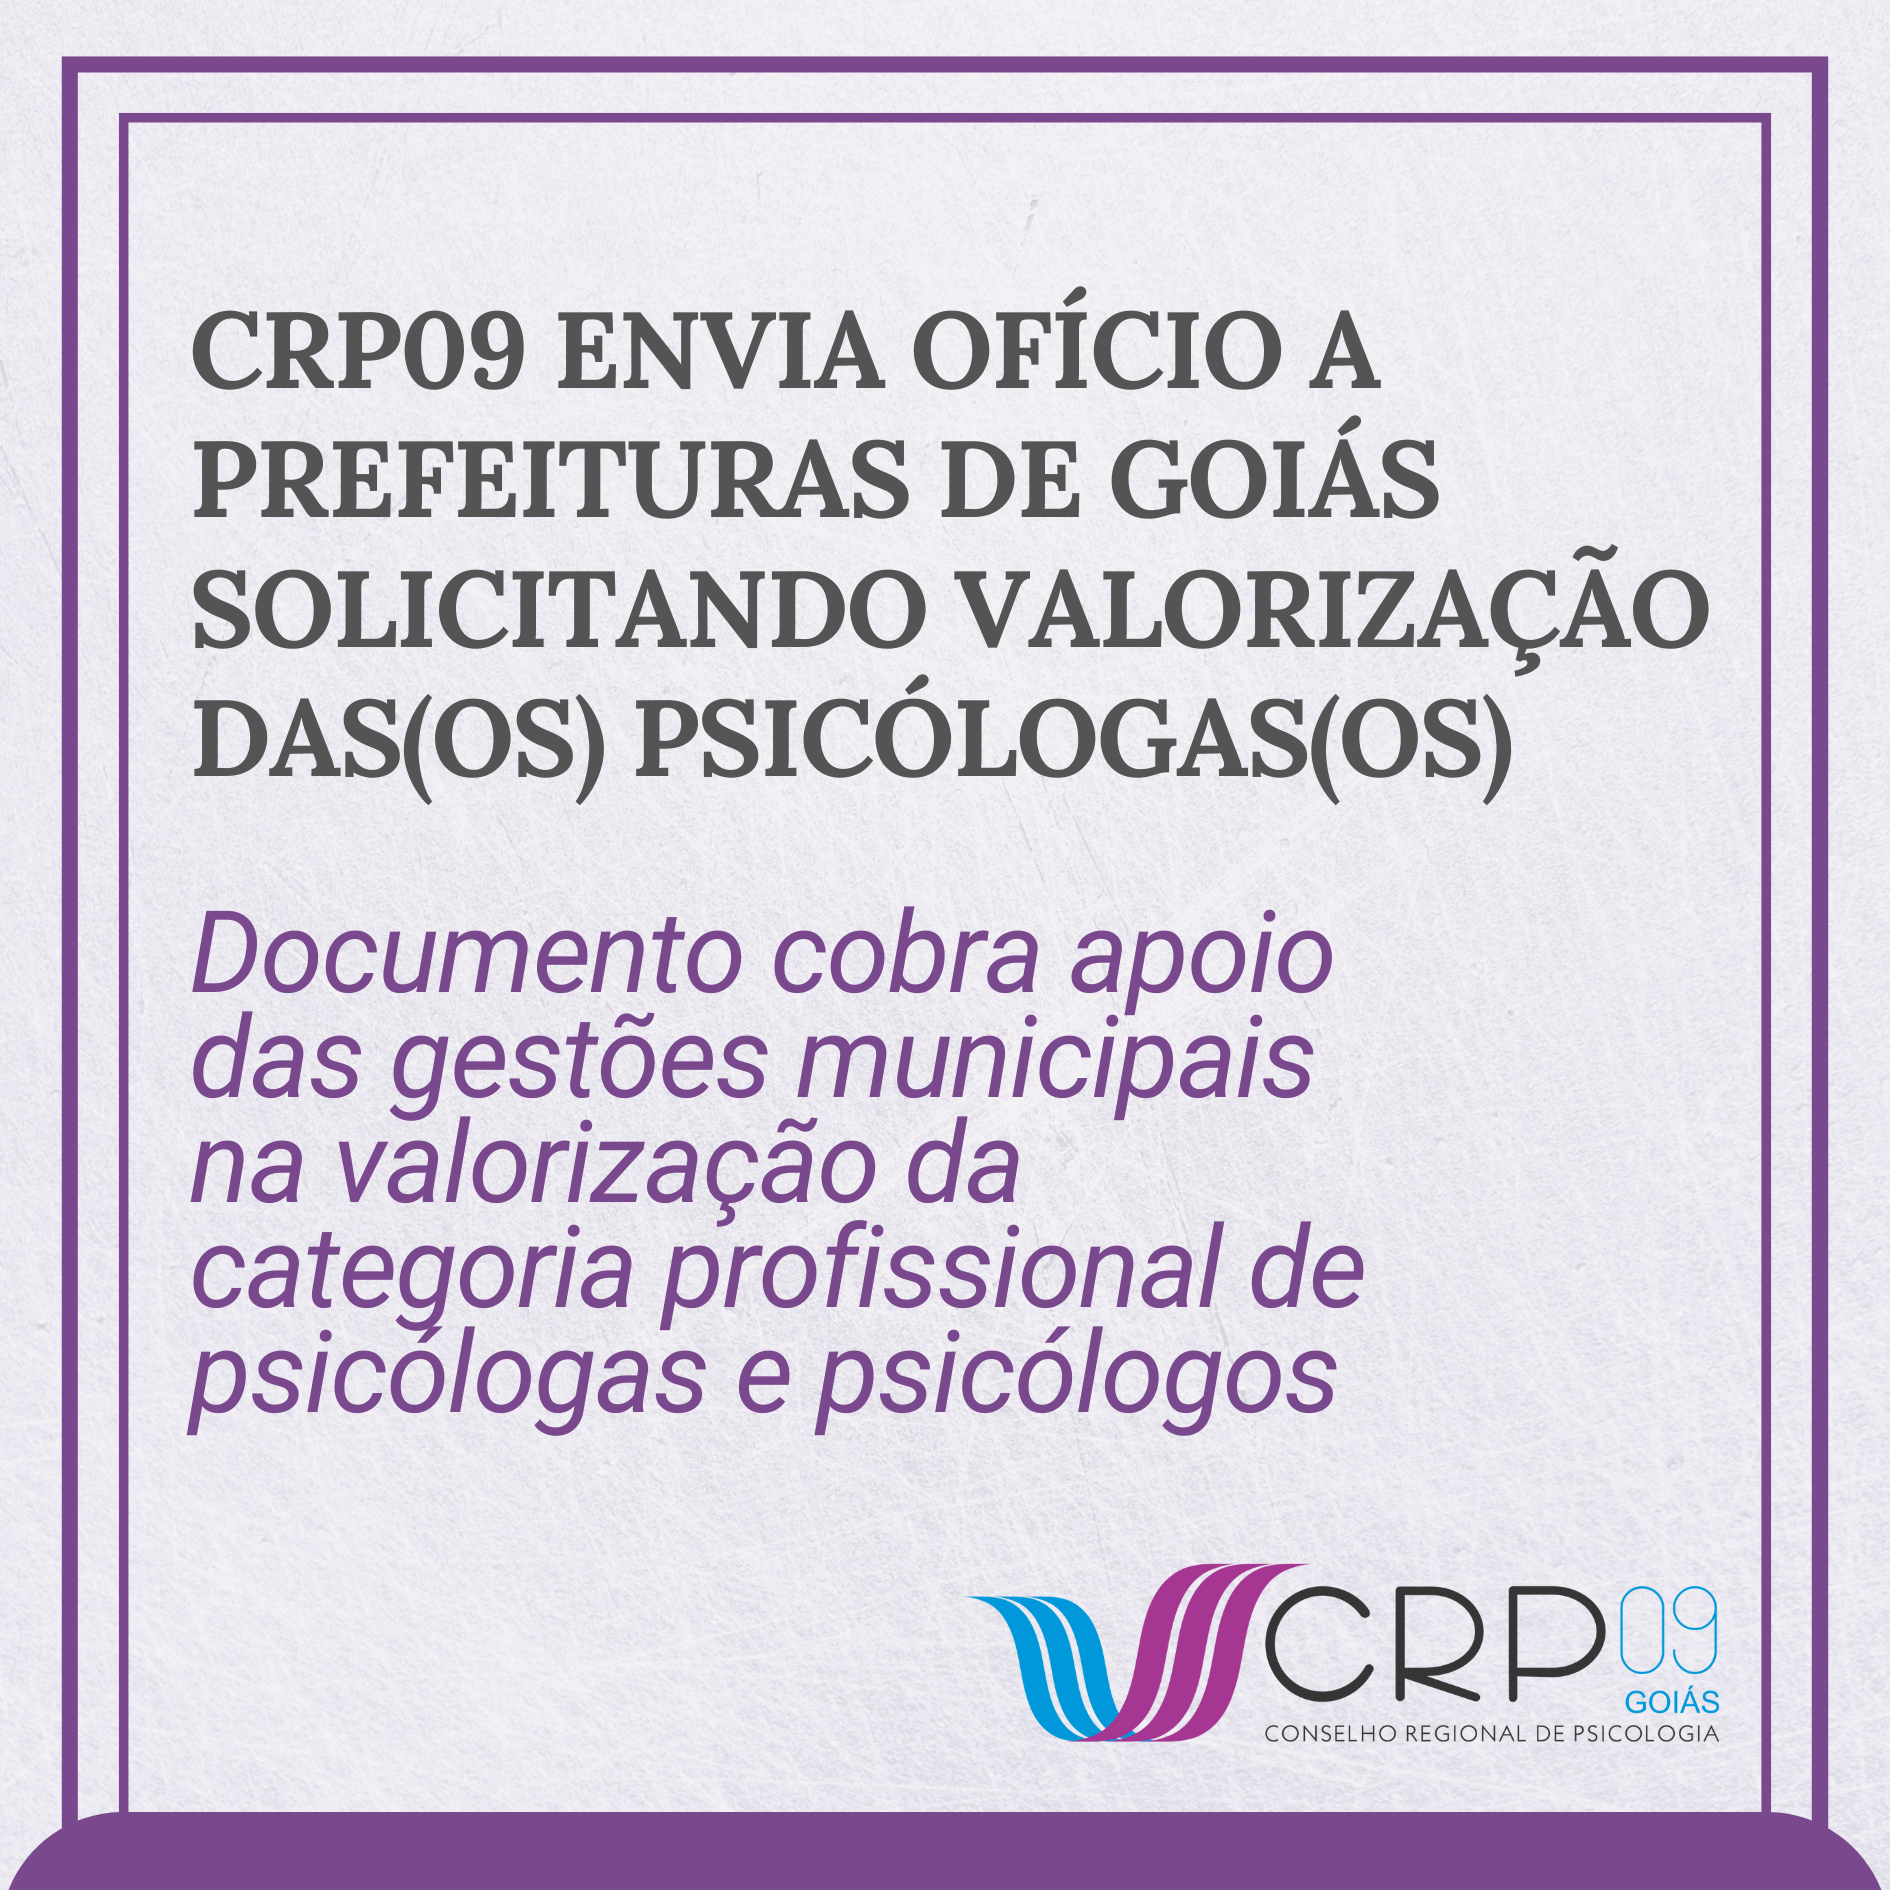 CRP09 envia ofício a prefeituras de Goiás solicitando apoio à valorização dasos psicólogasos